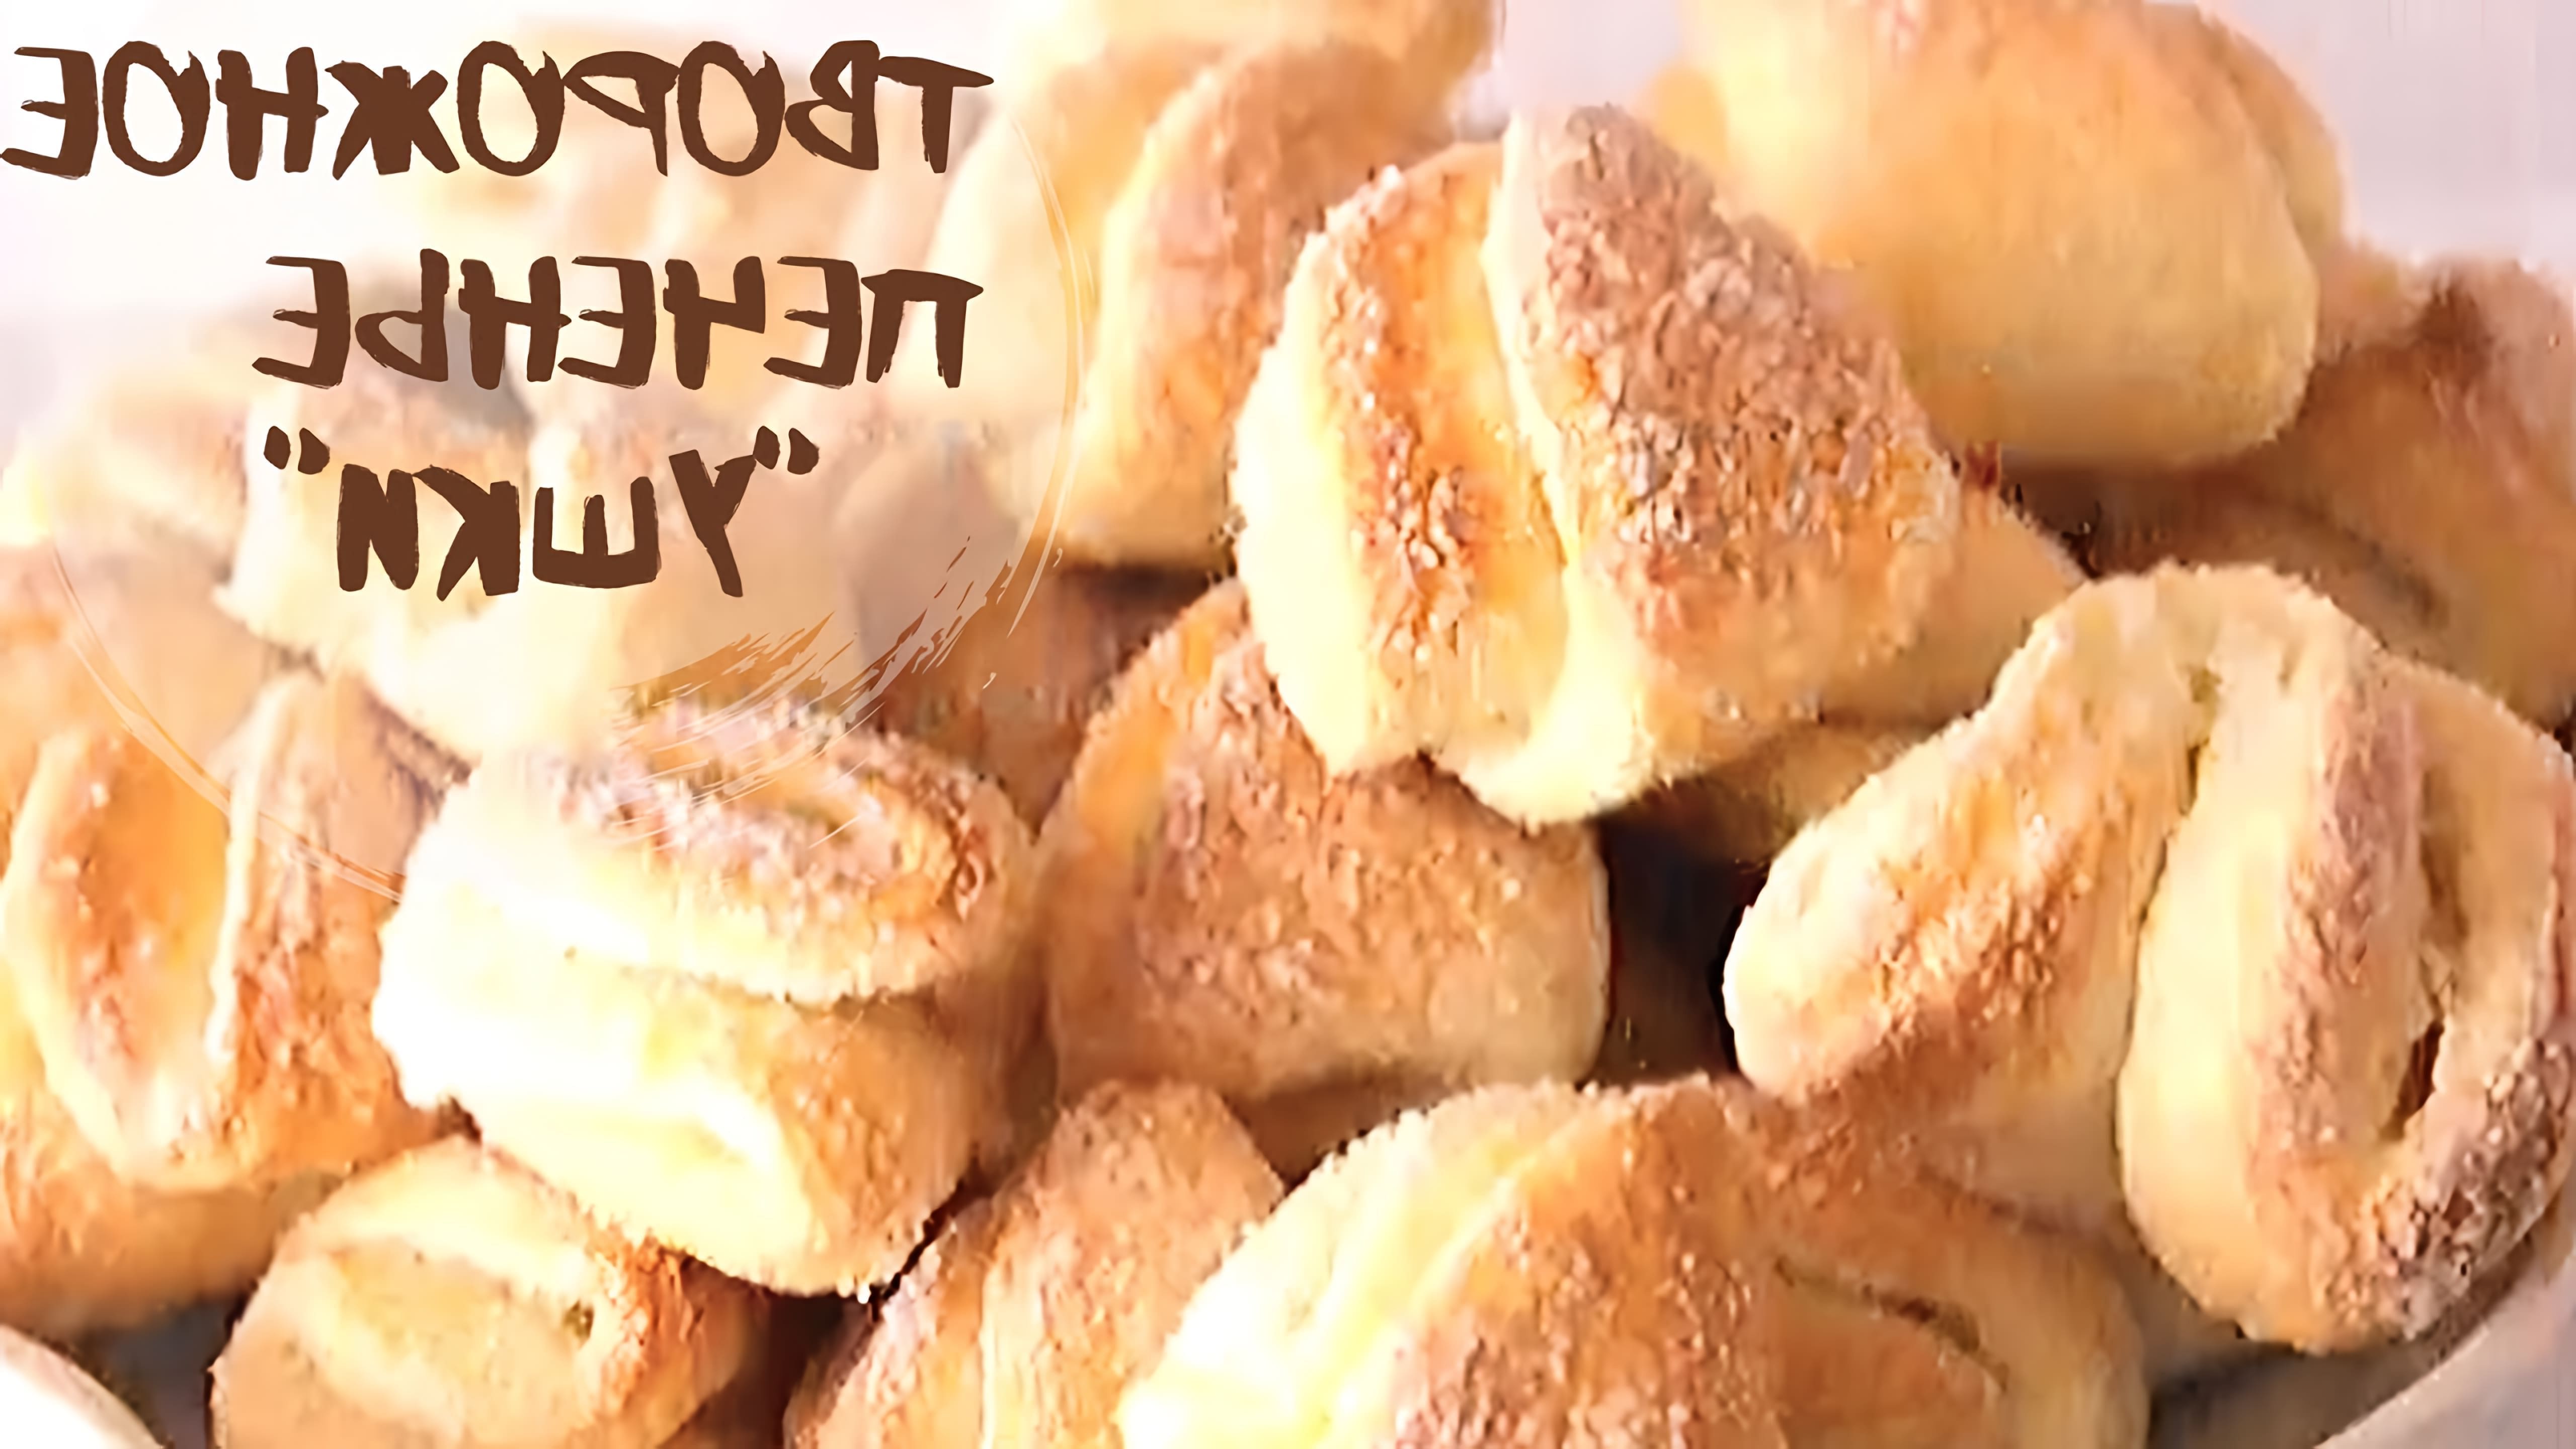 В этом видео демонстрируется рецепт приготовления домашнего печенья с творогом